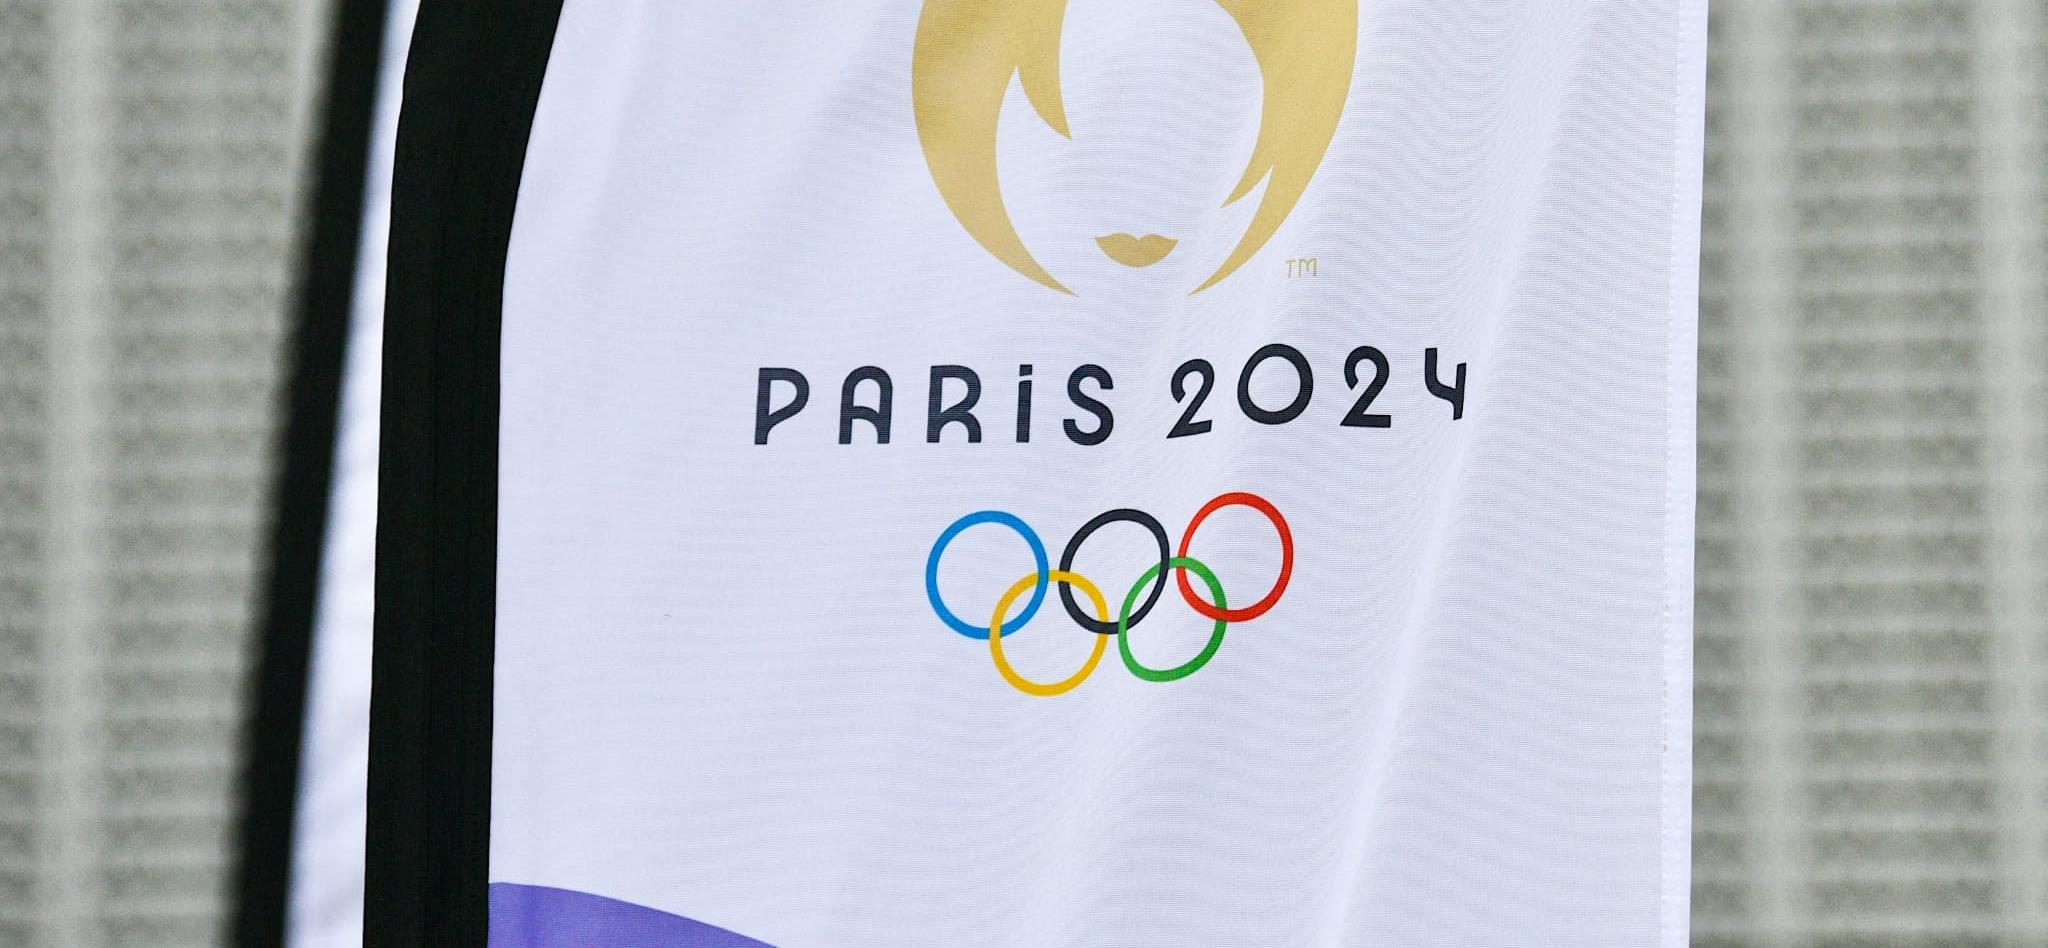 Paris 2024 dévoile son slogan commun pour les Jeux Olympiques et Paralympiques